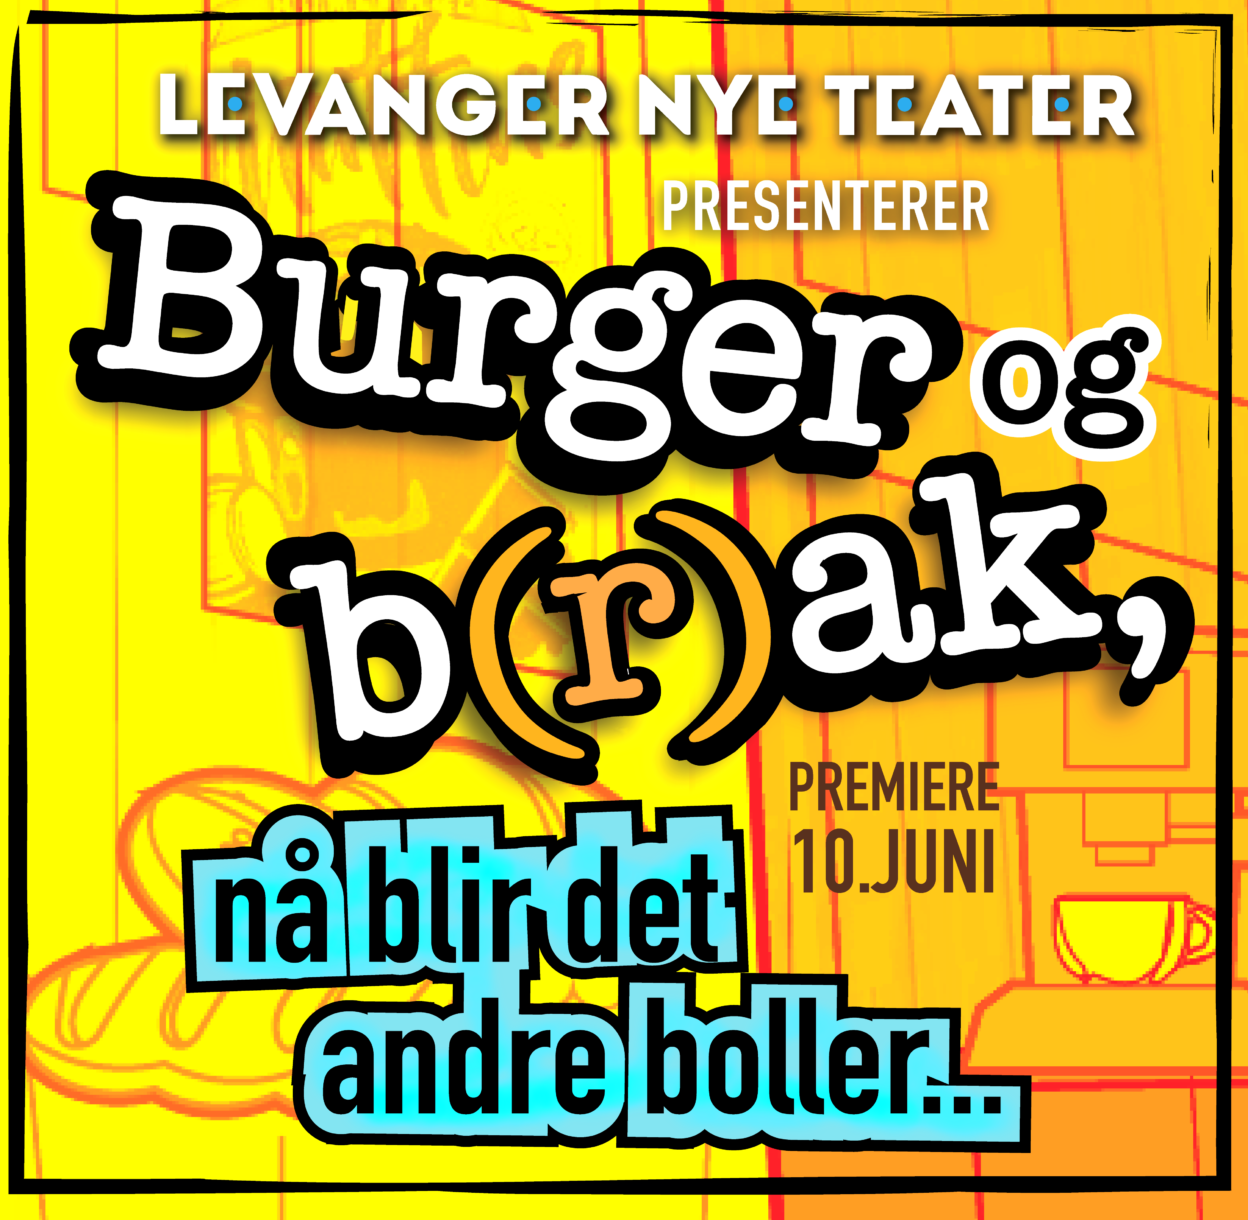 Billettsalg på nett til Burger og Brak. Forestilling med Levanger Nye Teater